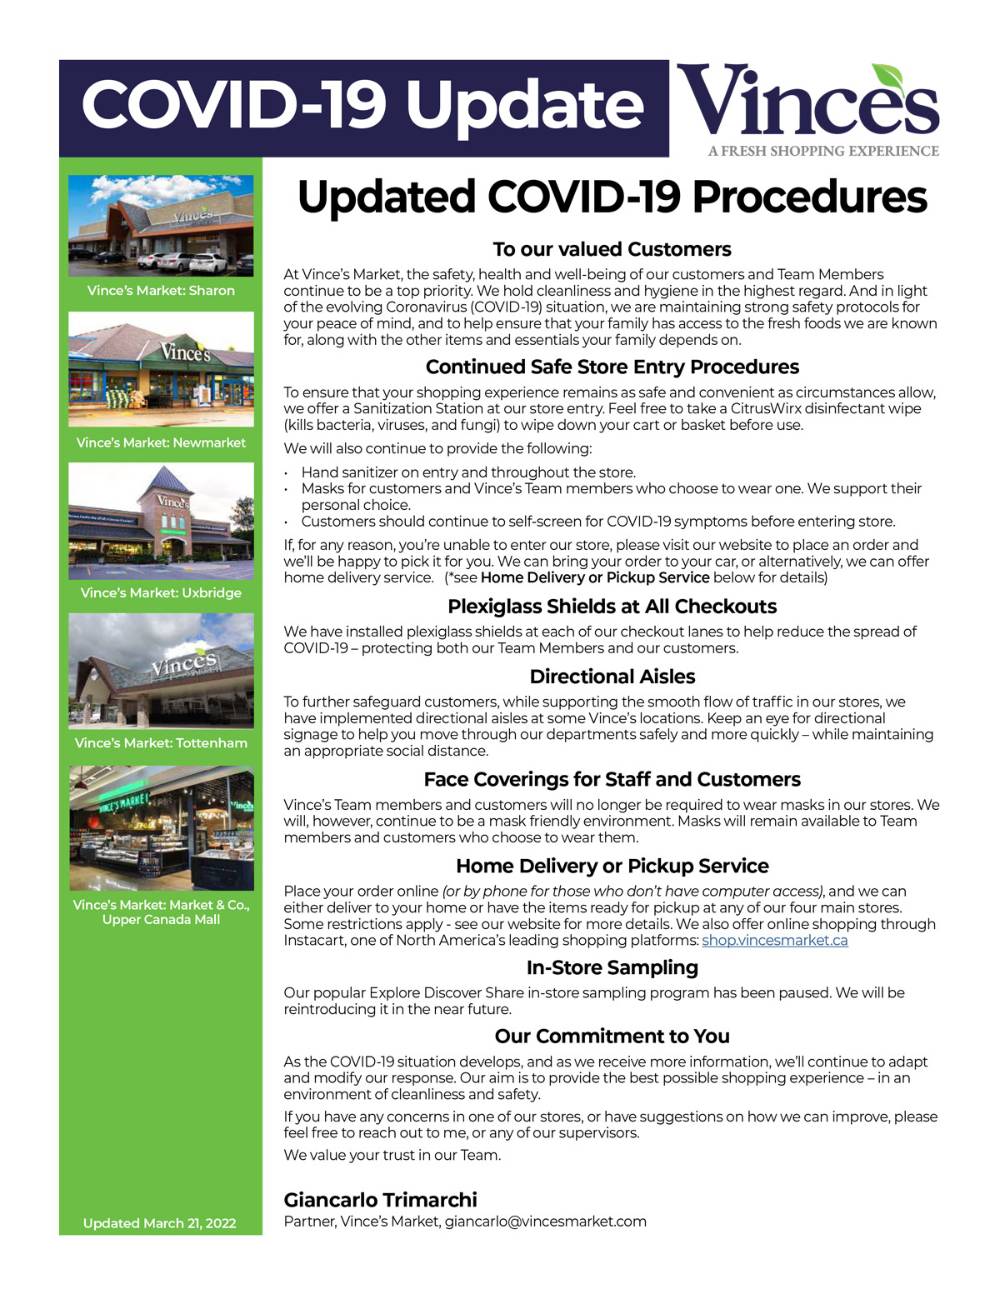 Vinces Market COVID-19 Update_ARP 2022